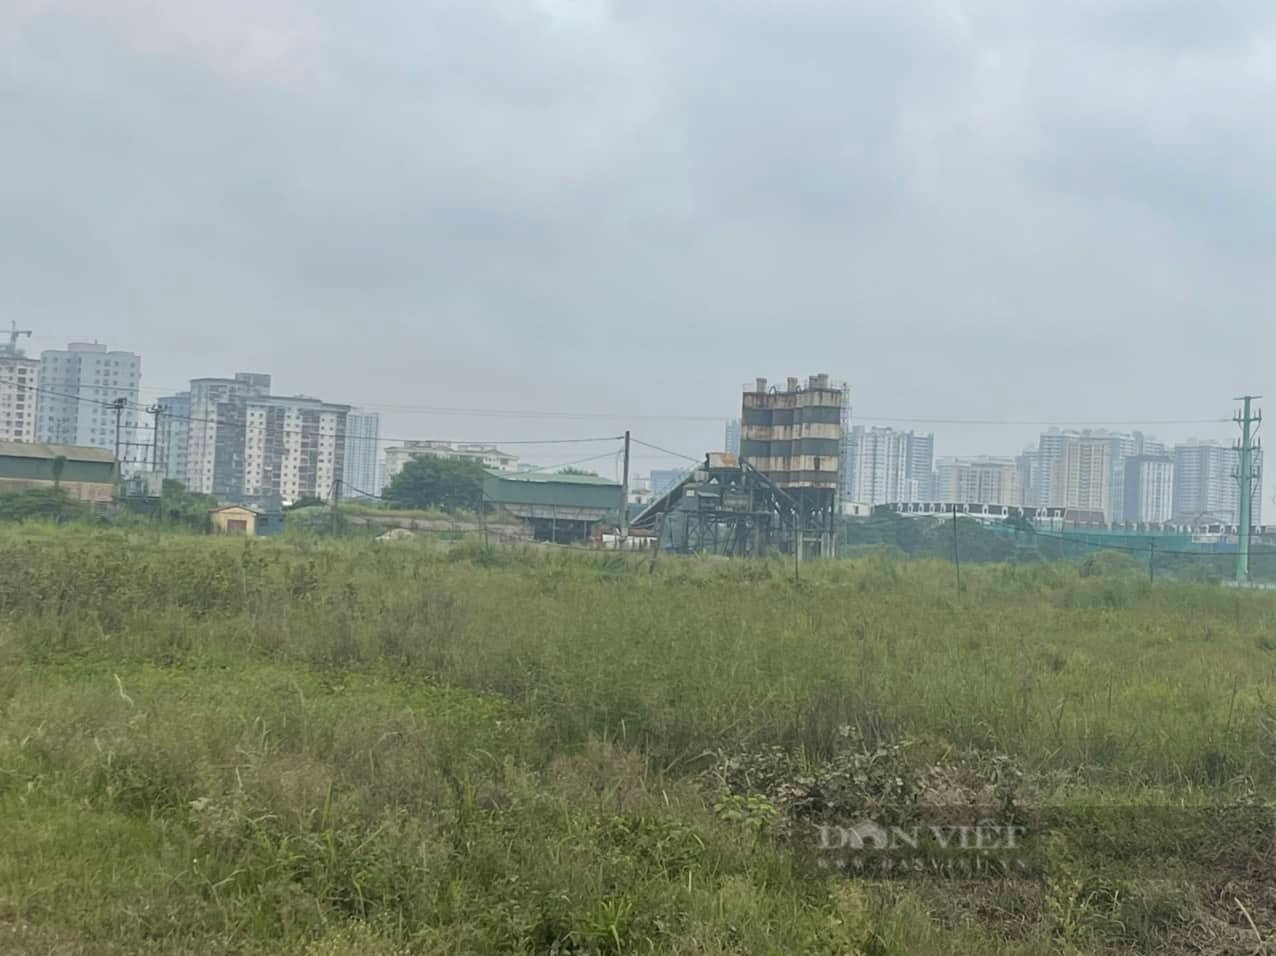 Khu đô thị mới Thịnh Liệt chỉ là bãi đất hoang để cỏ mọc 20 năm nay (Ảnh: Quang Anh)